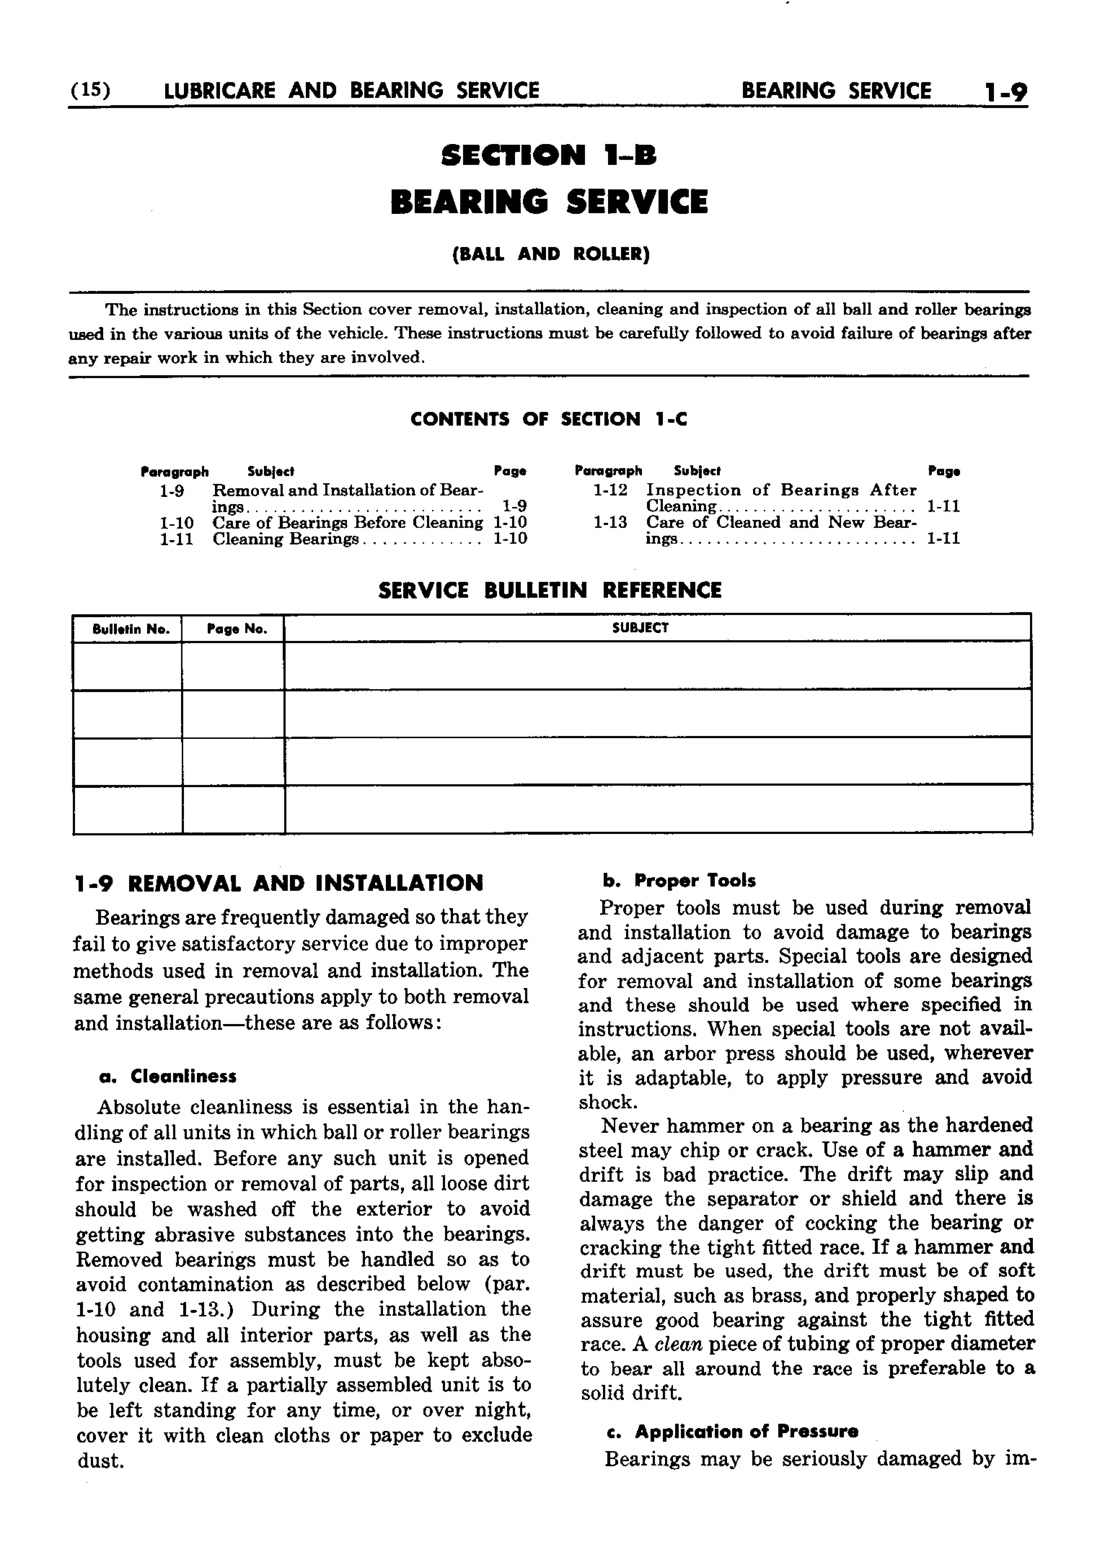 n_02 1952 Buick Shop Manual - Lubricare-009-009.jpg